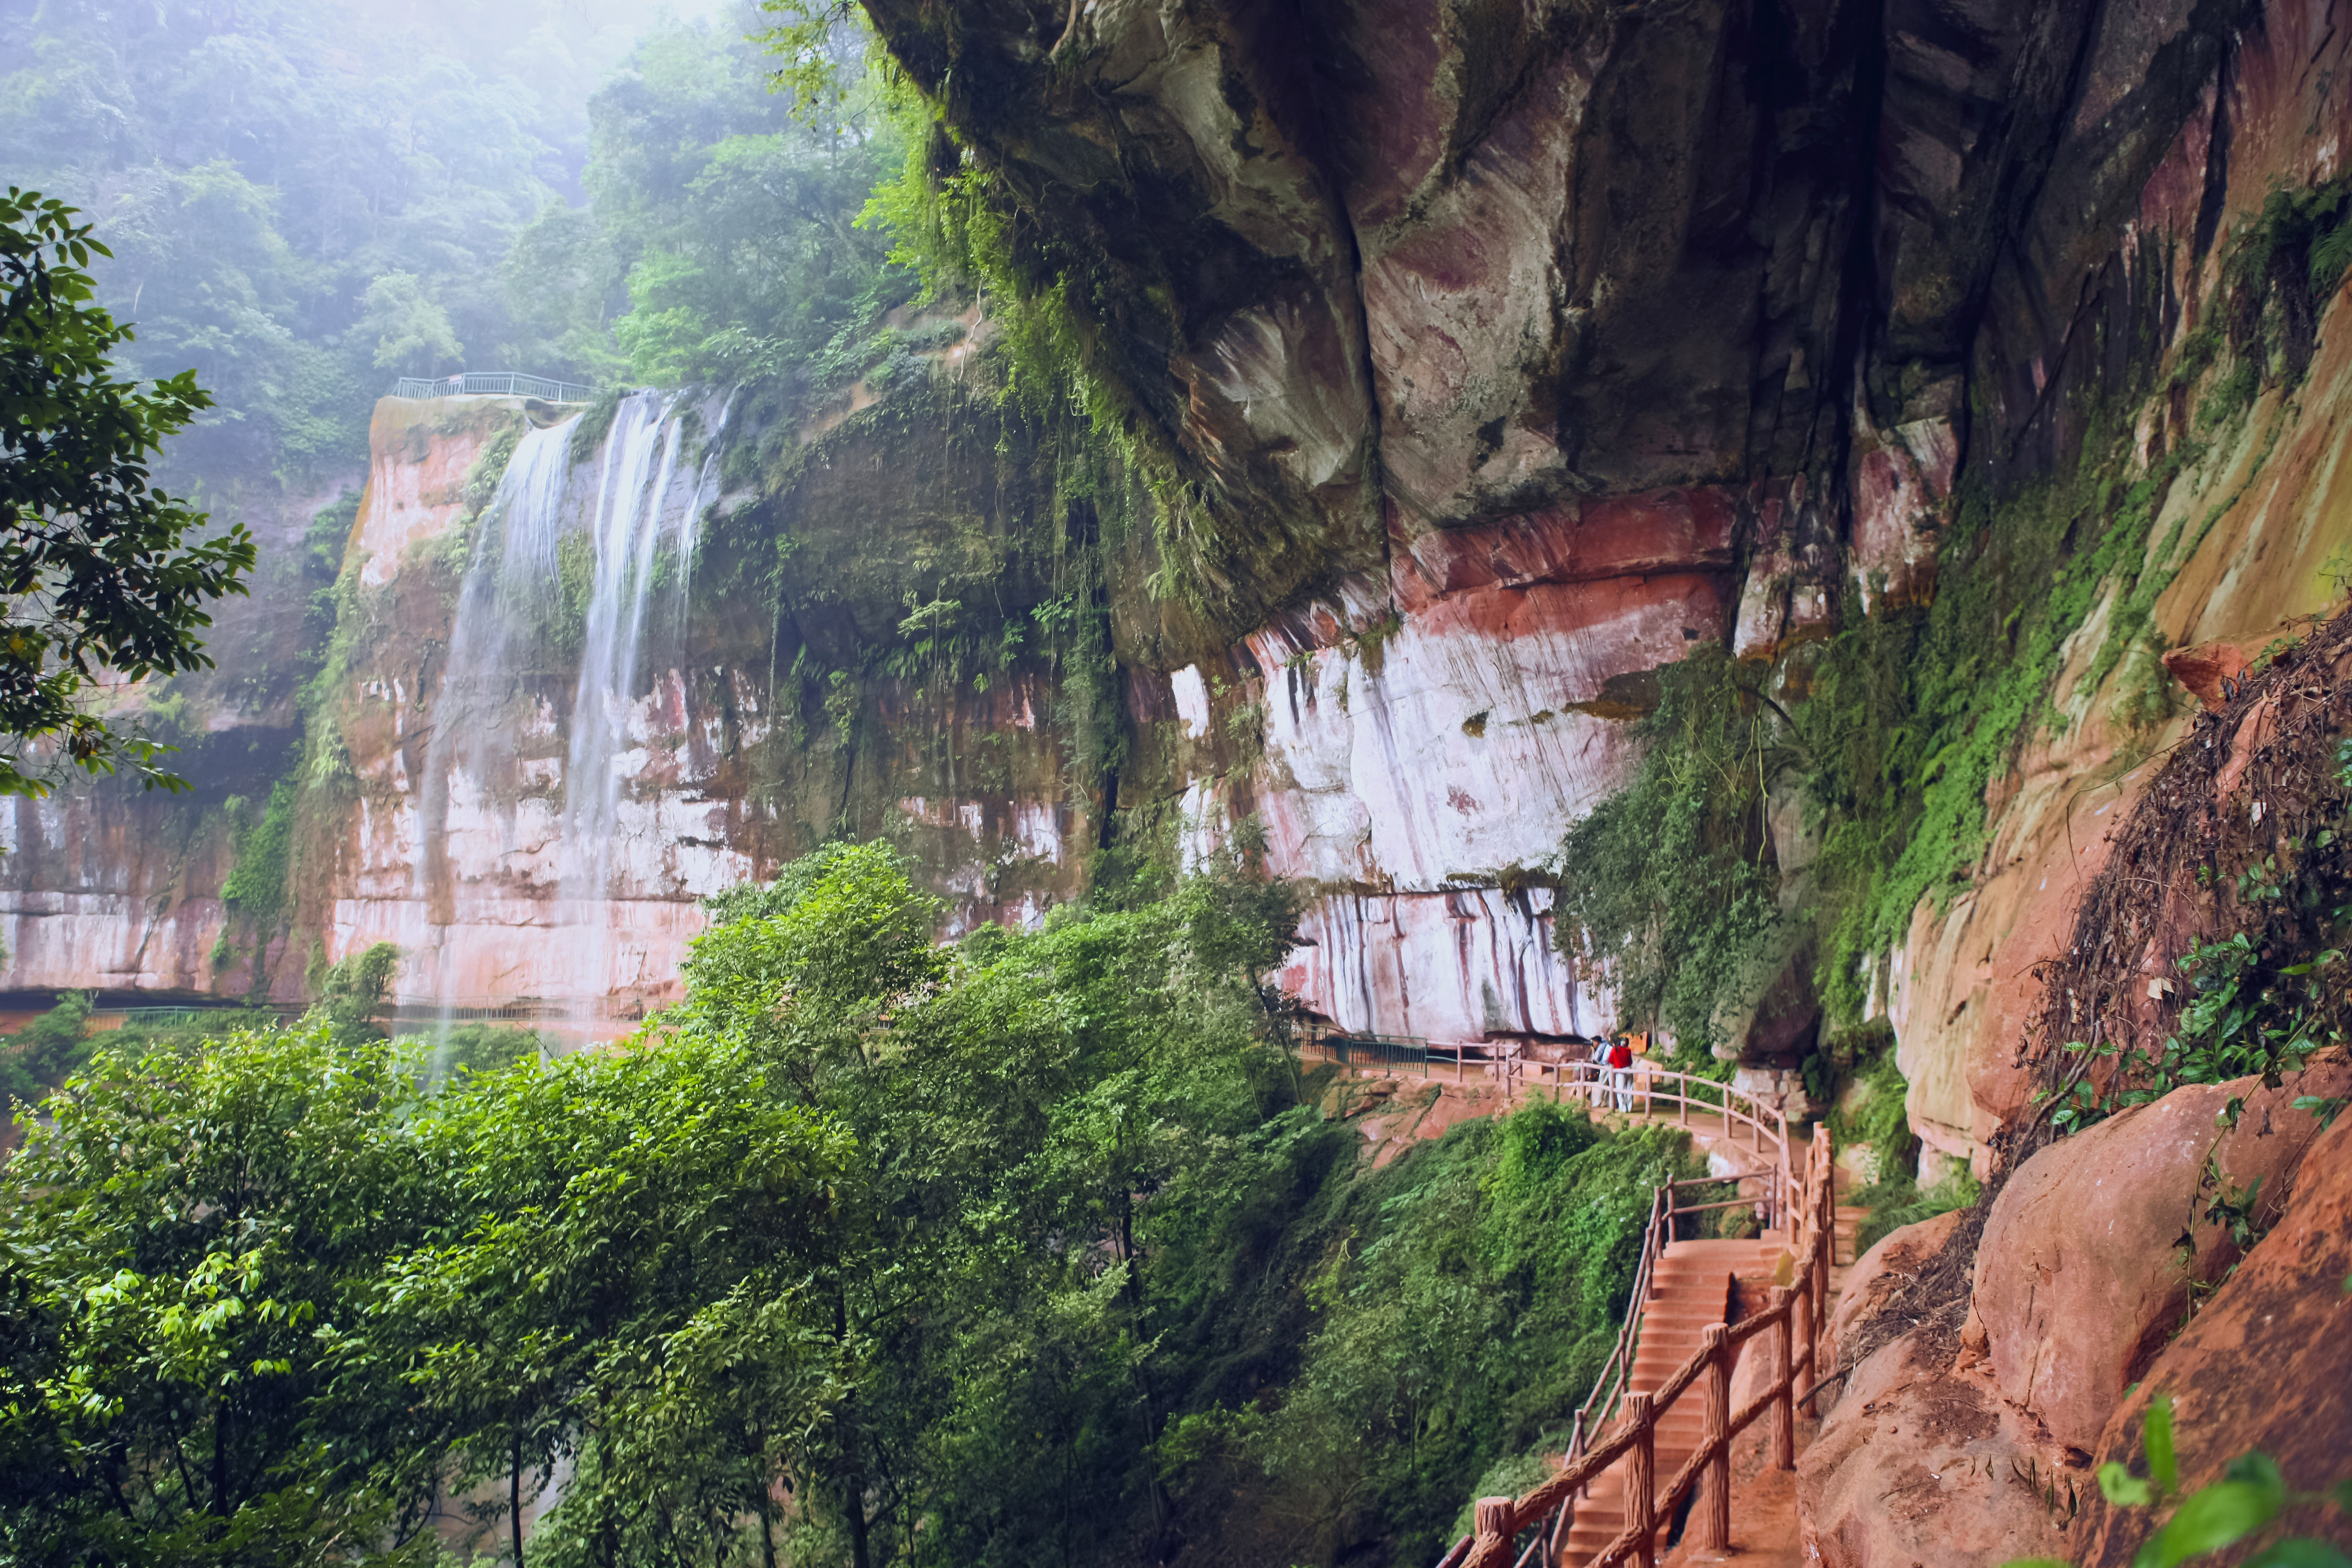 赤水燕子岩国家森林公园属中亚热带湿润季风气候区,冬暖春早,夏季炎热